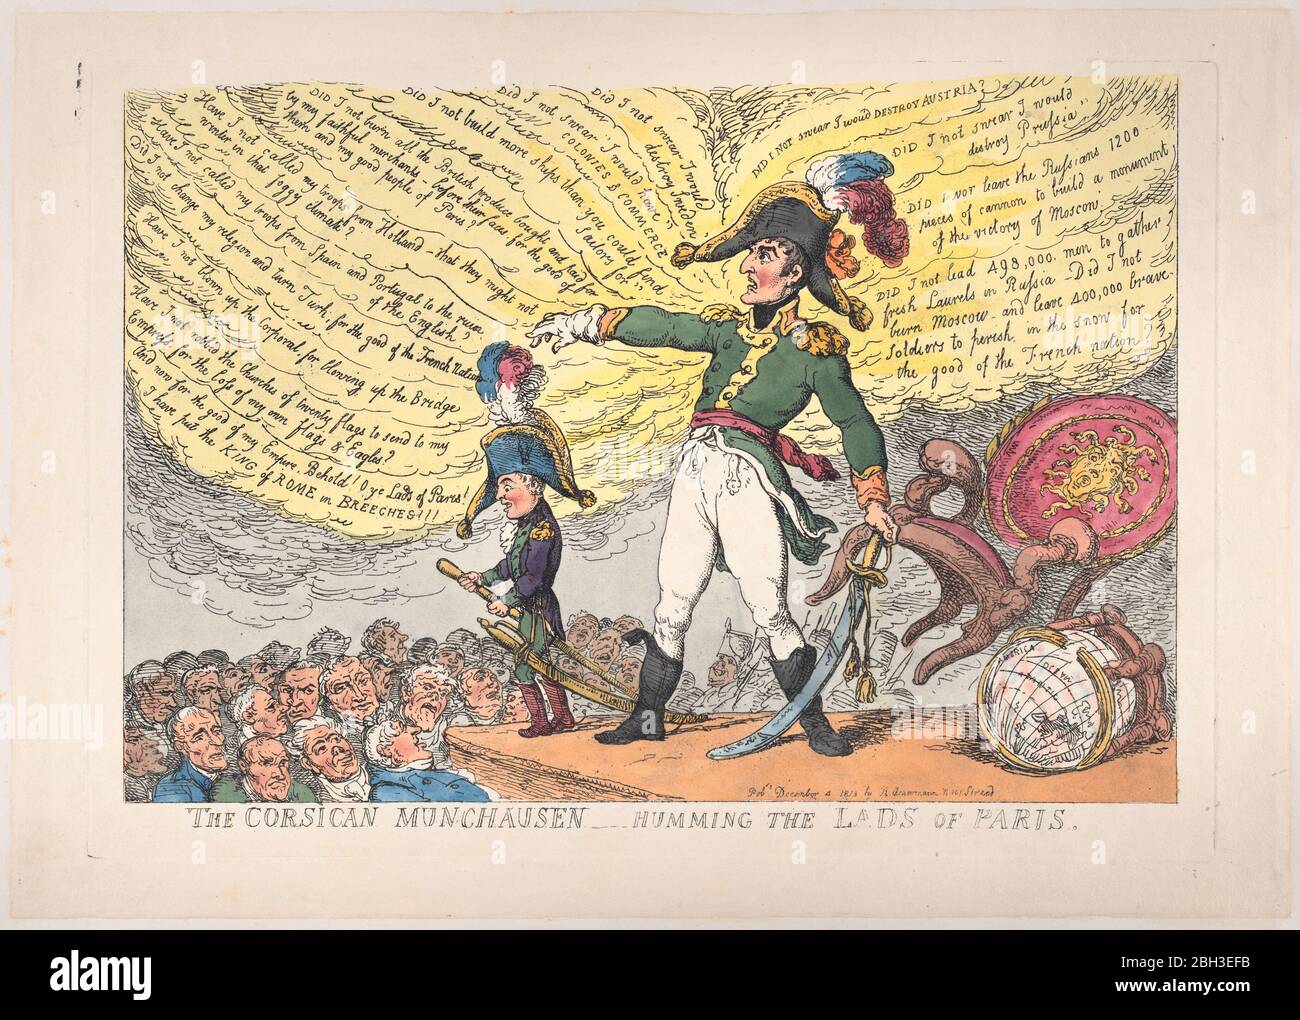 Le Corsican Munchausen - humiliant les Lads de Paris, 4 décembre 1813. Banque D'Images